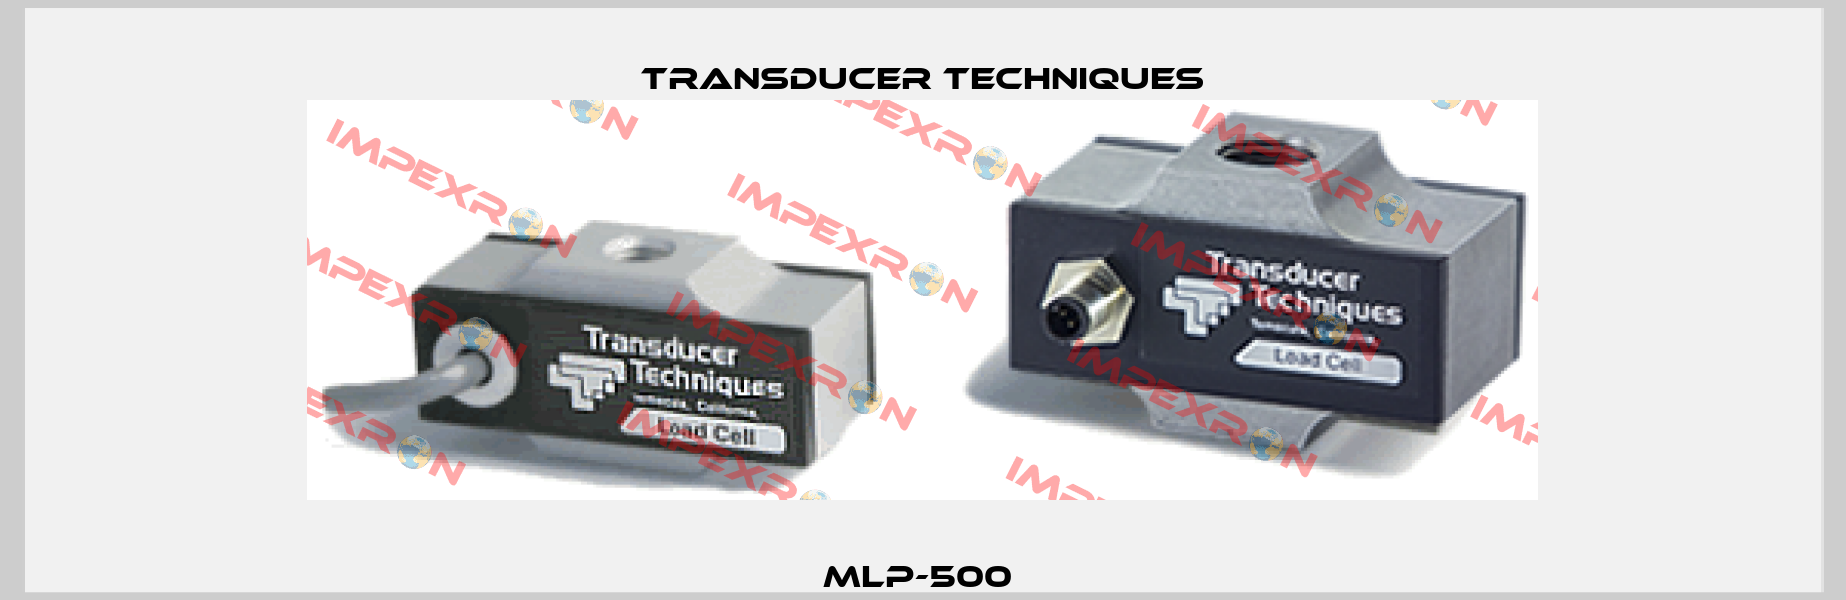 MLP-500  Transducer Techniques